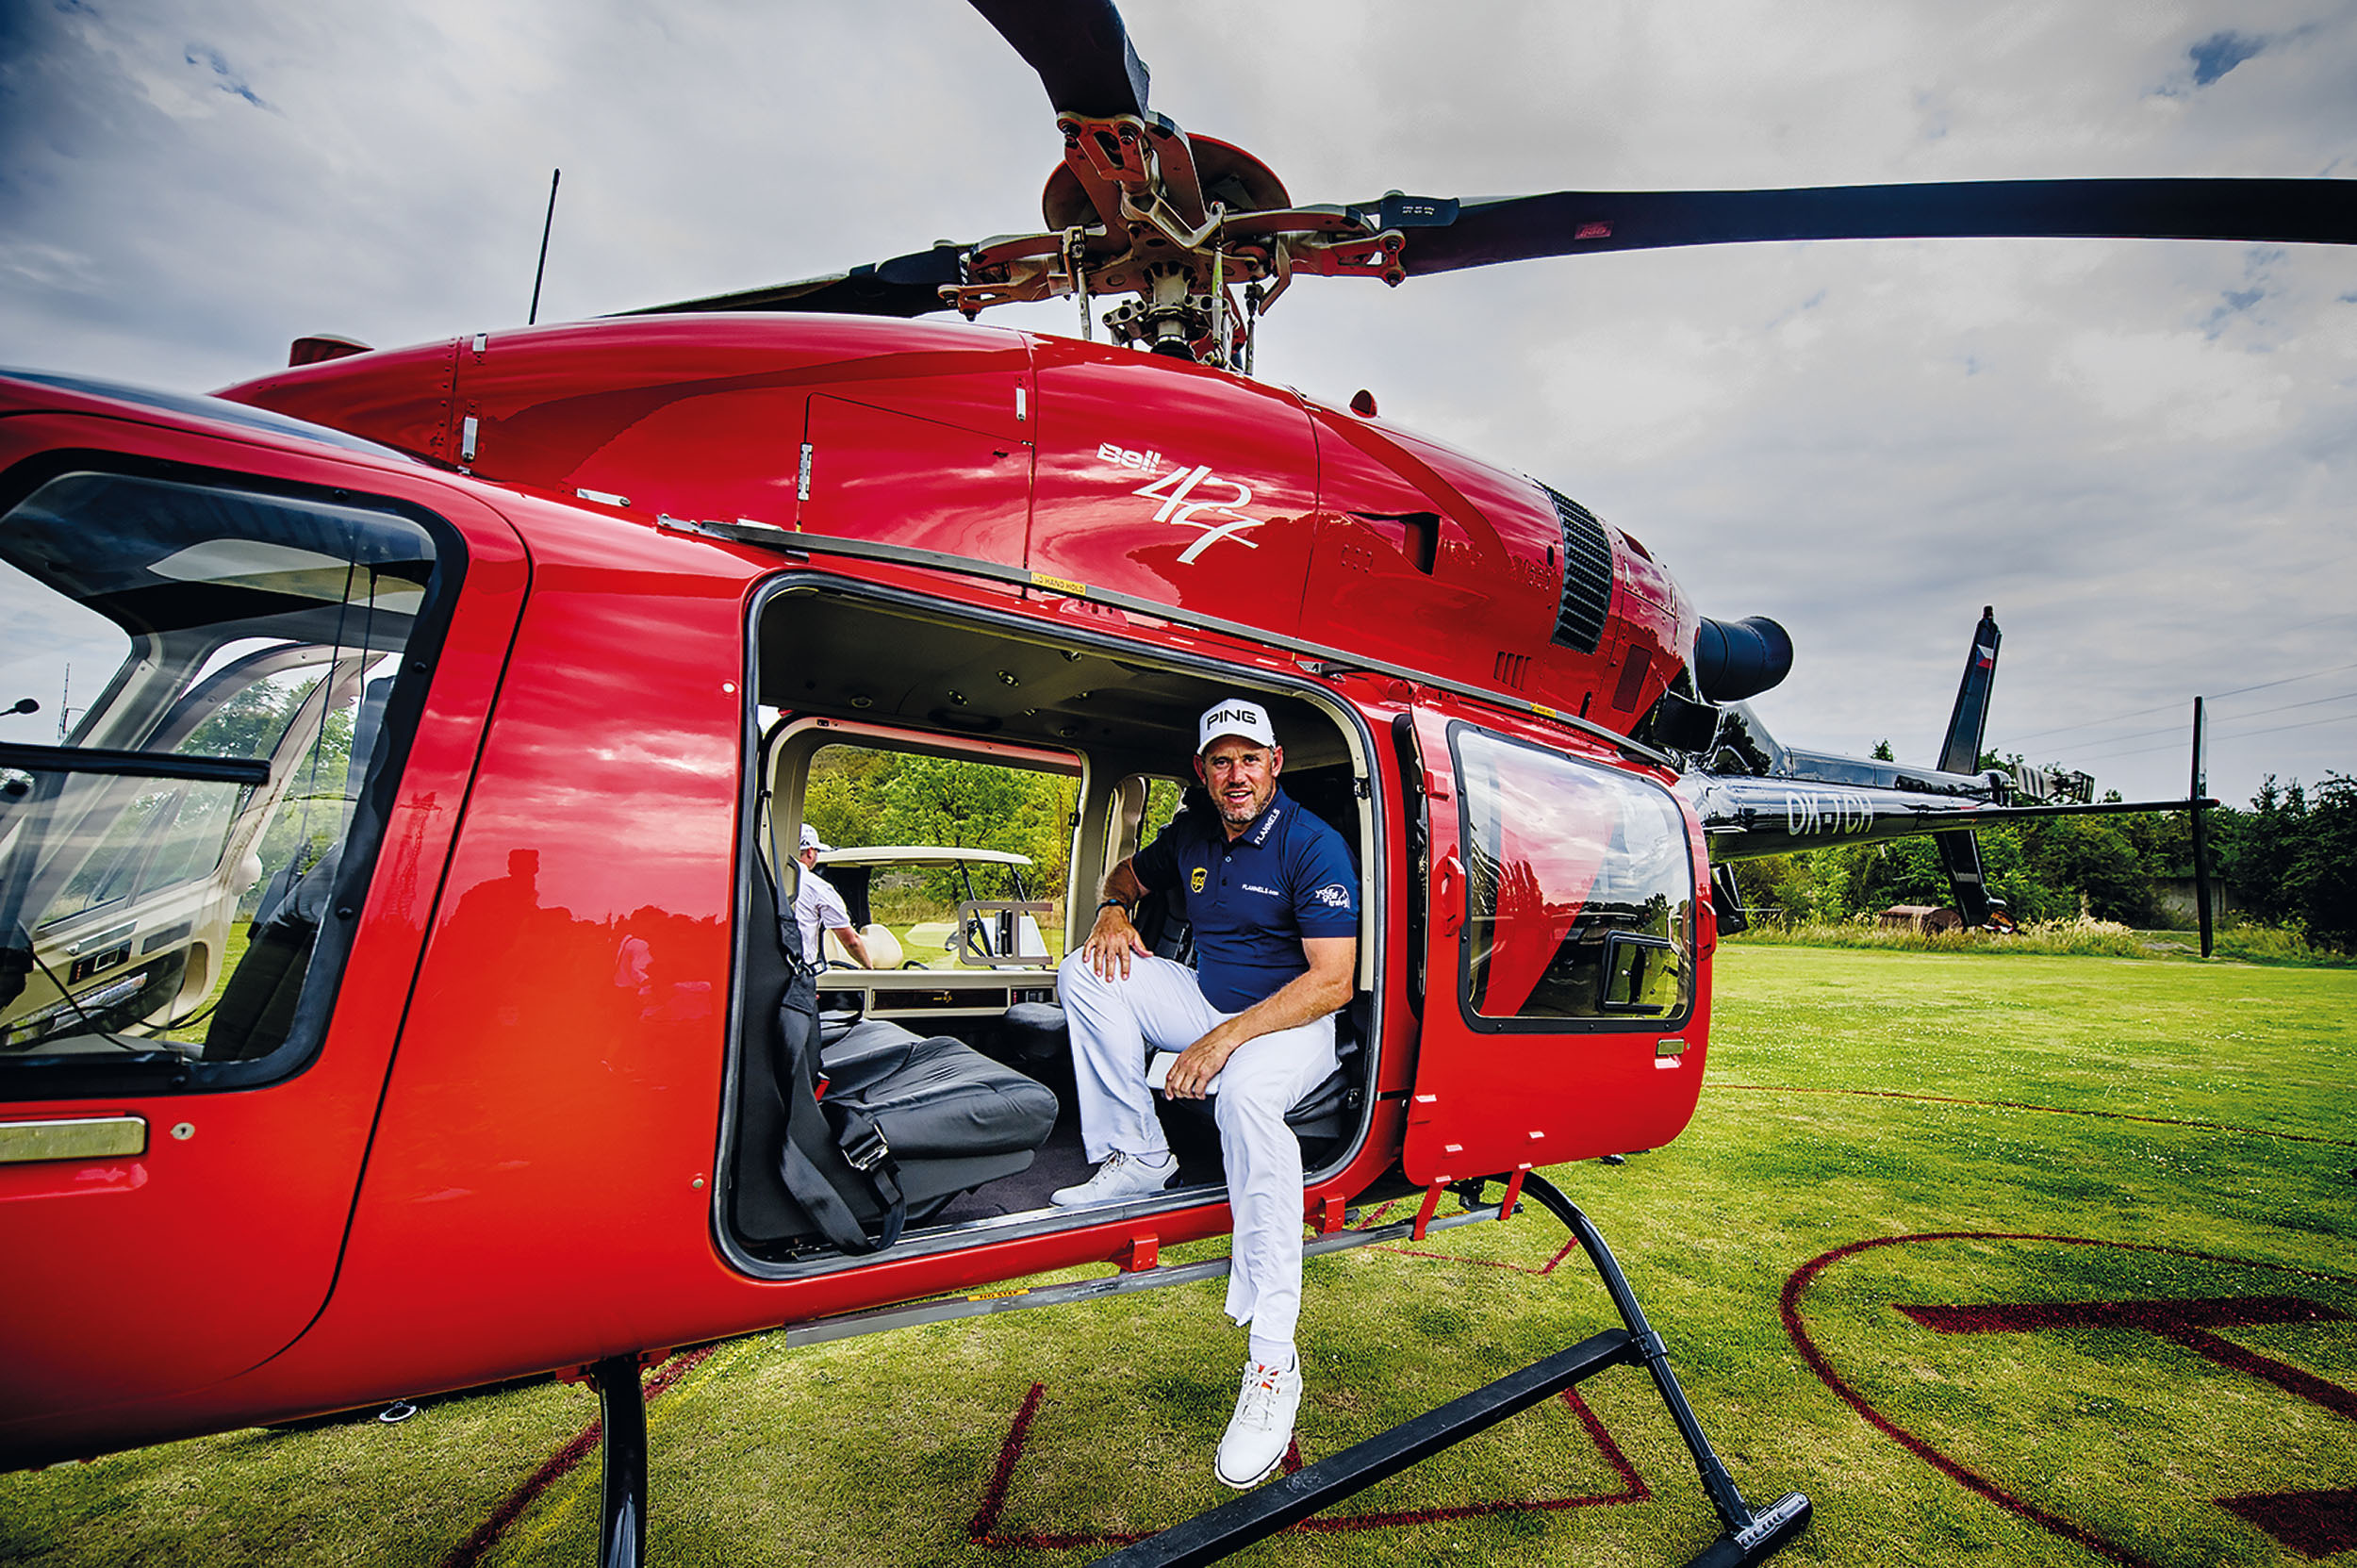 Lee Westwood v roce 2017 letěl vrtulníkem z Albatrossu do Mstětic udělat ukázkovou lekci pro české golfisty. Zážitkem pro ně byl i neobvyklý způsob přepravy.